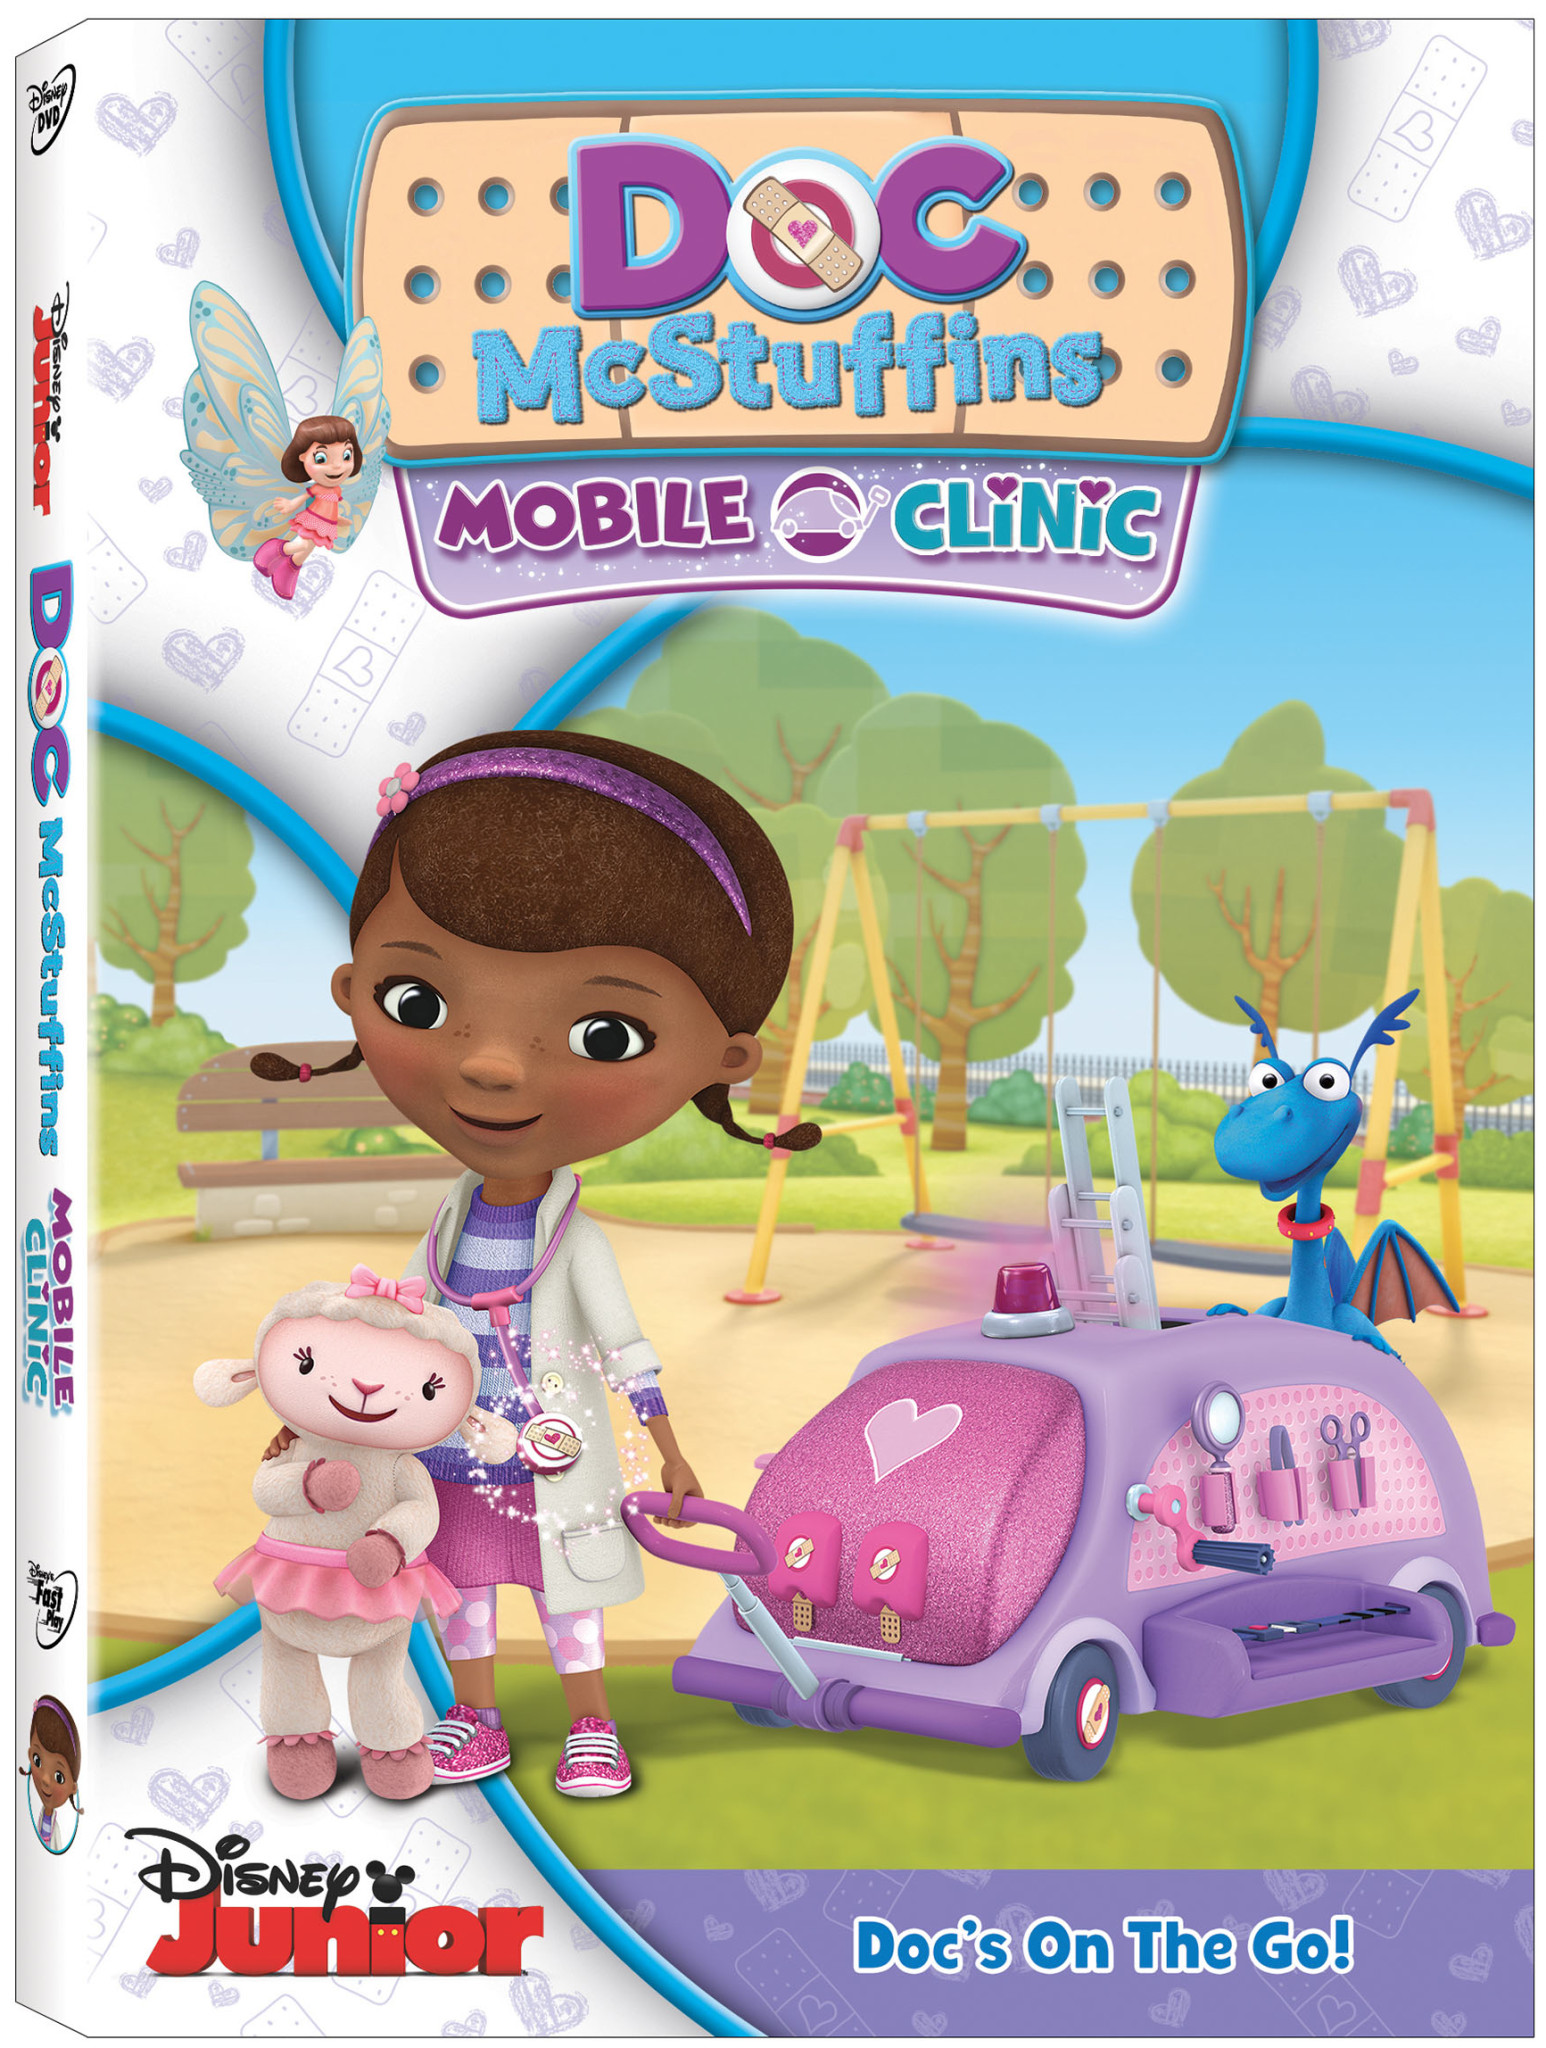 Doc McStuffins Mobile Clinic DVD Review